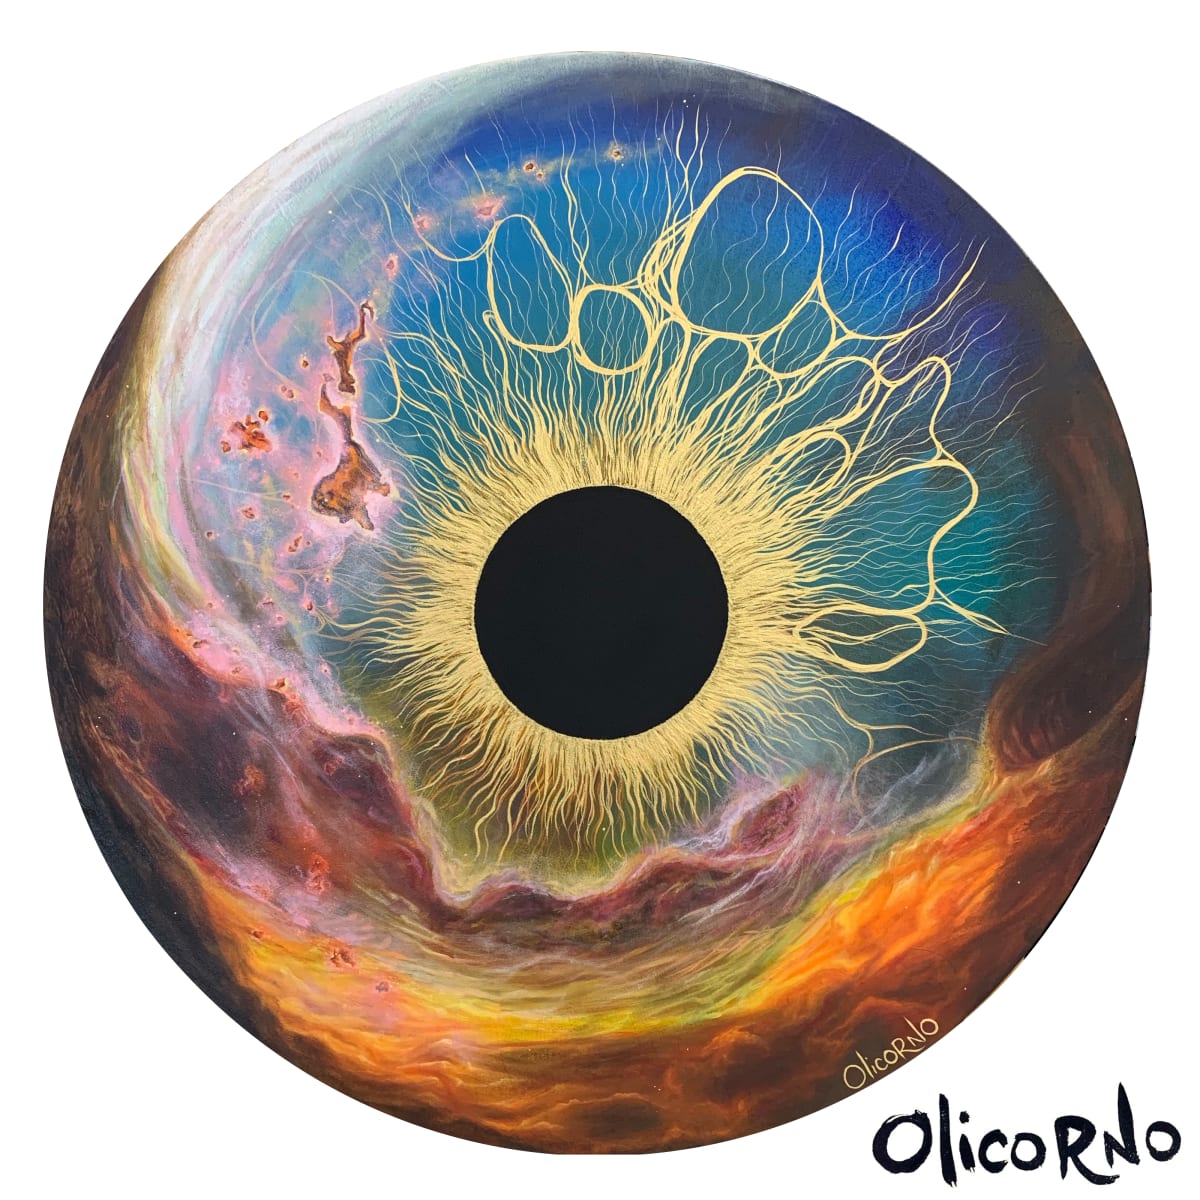 Témoins de grandeur #39 - Cosmic iris (L-C.Y) by Olicorno 